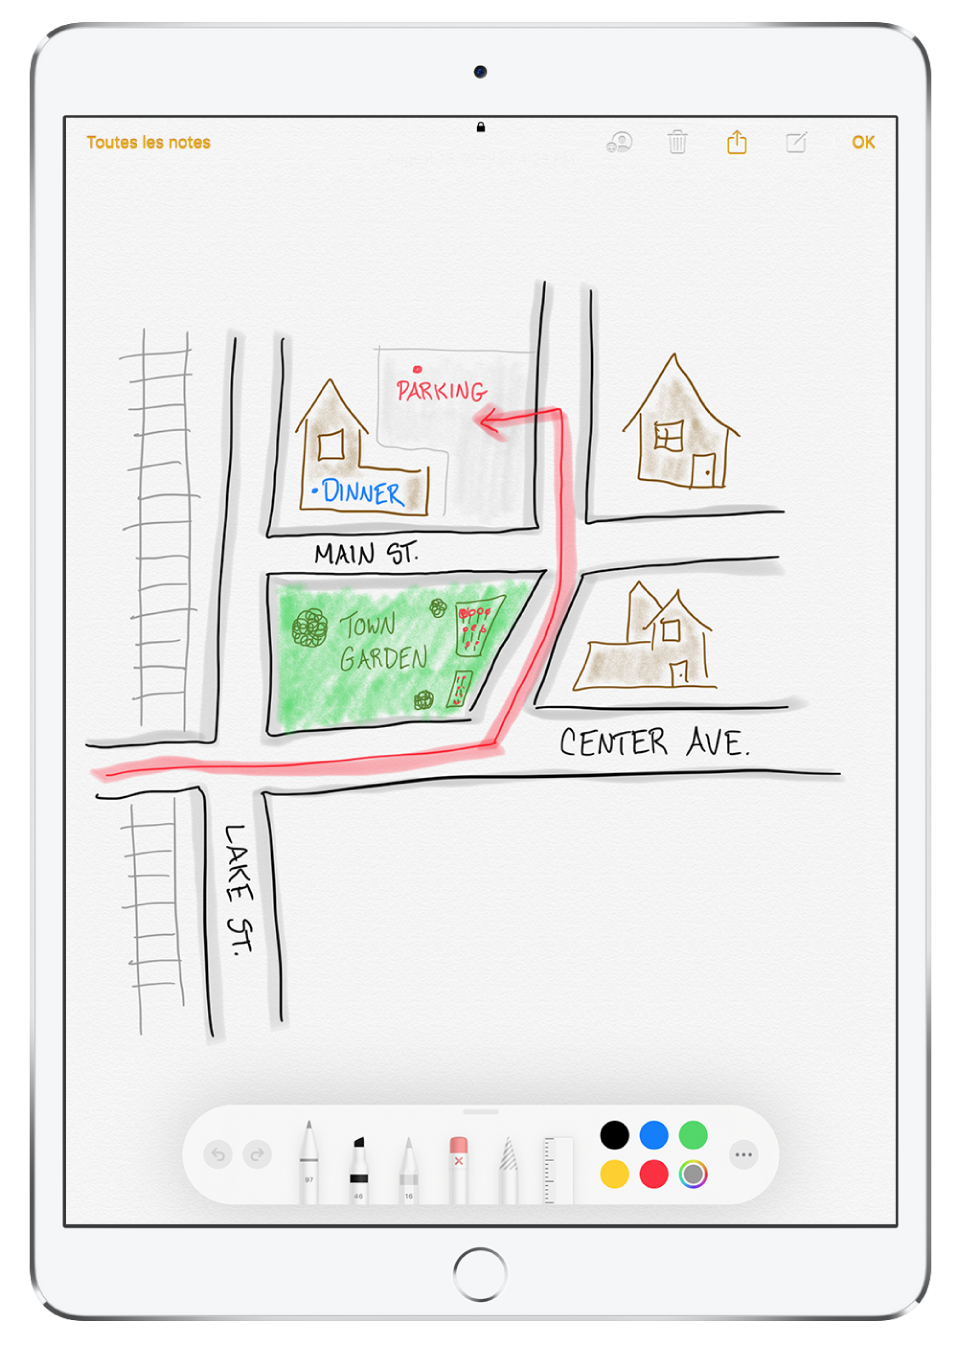 Dessin d’un quartier dans une note, dans l’app Notes. Le dessin inclut des rues étiquetées et une flèche rouge dirigeant vers un parking disponible. Le long du bas de l’écran se trouve la barre d’outils d'annotation avec un outil d’écriture et une couleur personnalisée sélectionnés.